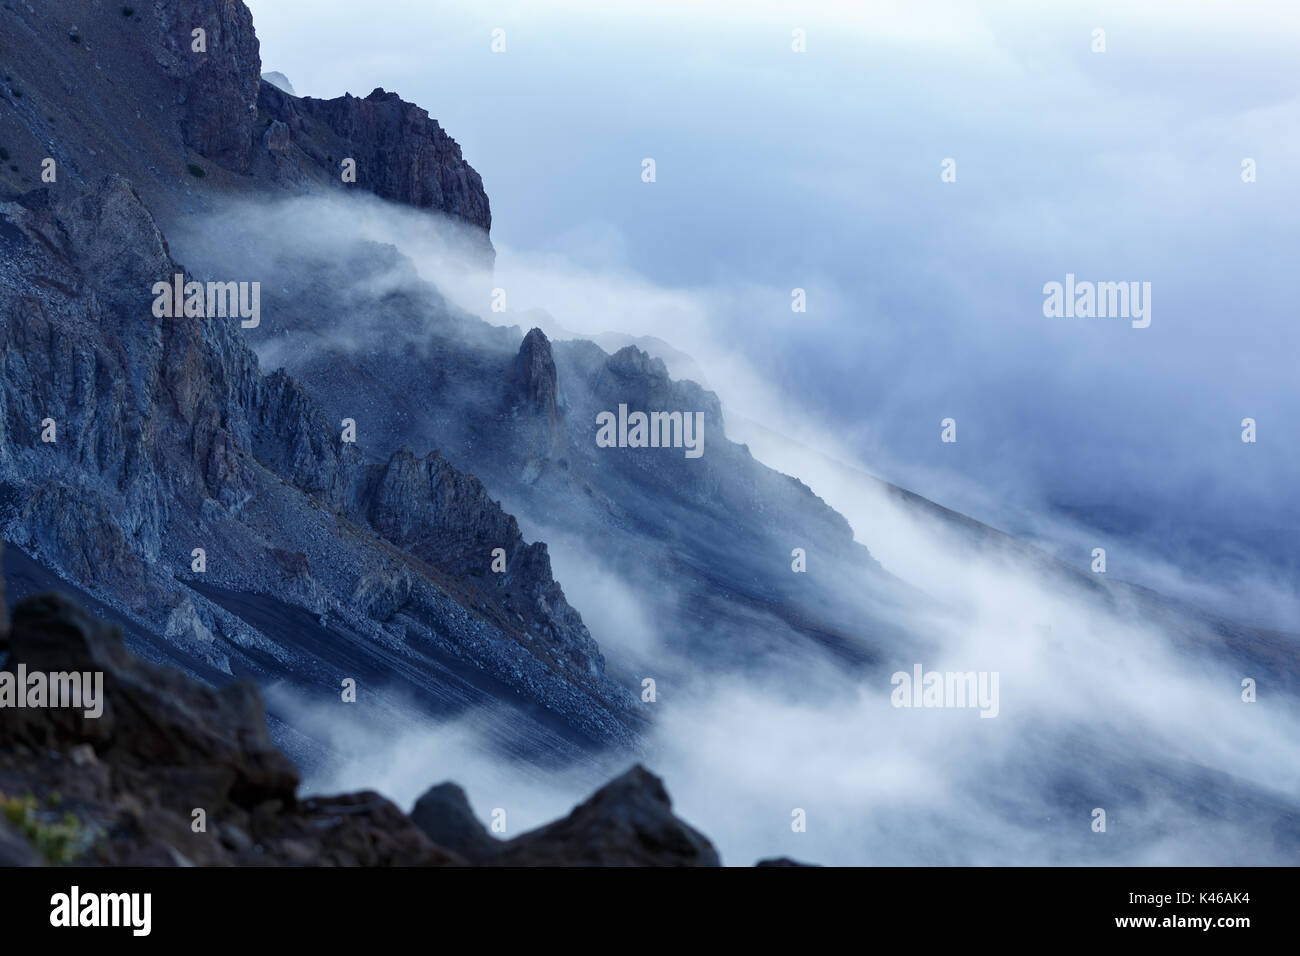 La nebbia copre i picchi minori dell'aspro paesaggio vulcanico Foto Stock